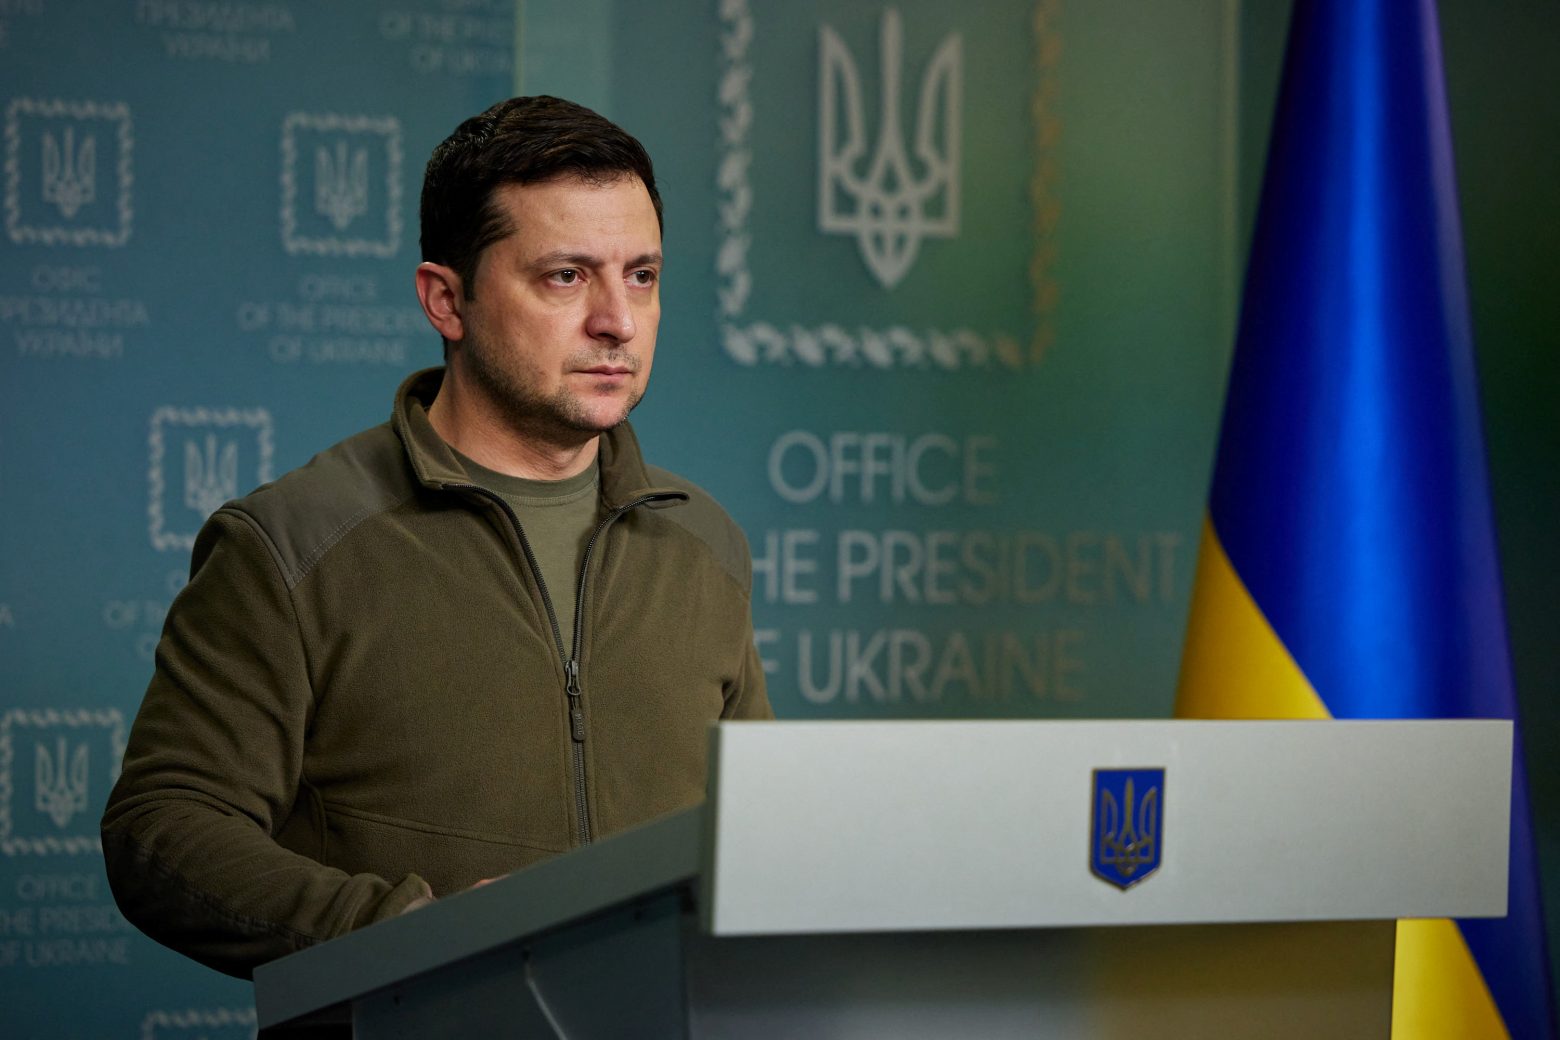 Politico: Τι θα γίνει αν δολοφονηθεί ο Β.Ζελένκσι – Ποιος θα τον αντικαταστήσει στην ηγεσία της Ουκρανίας